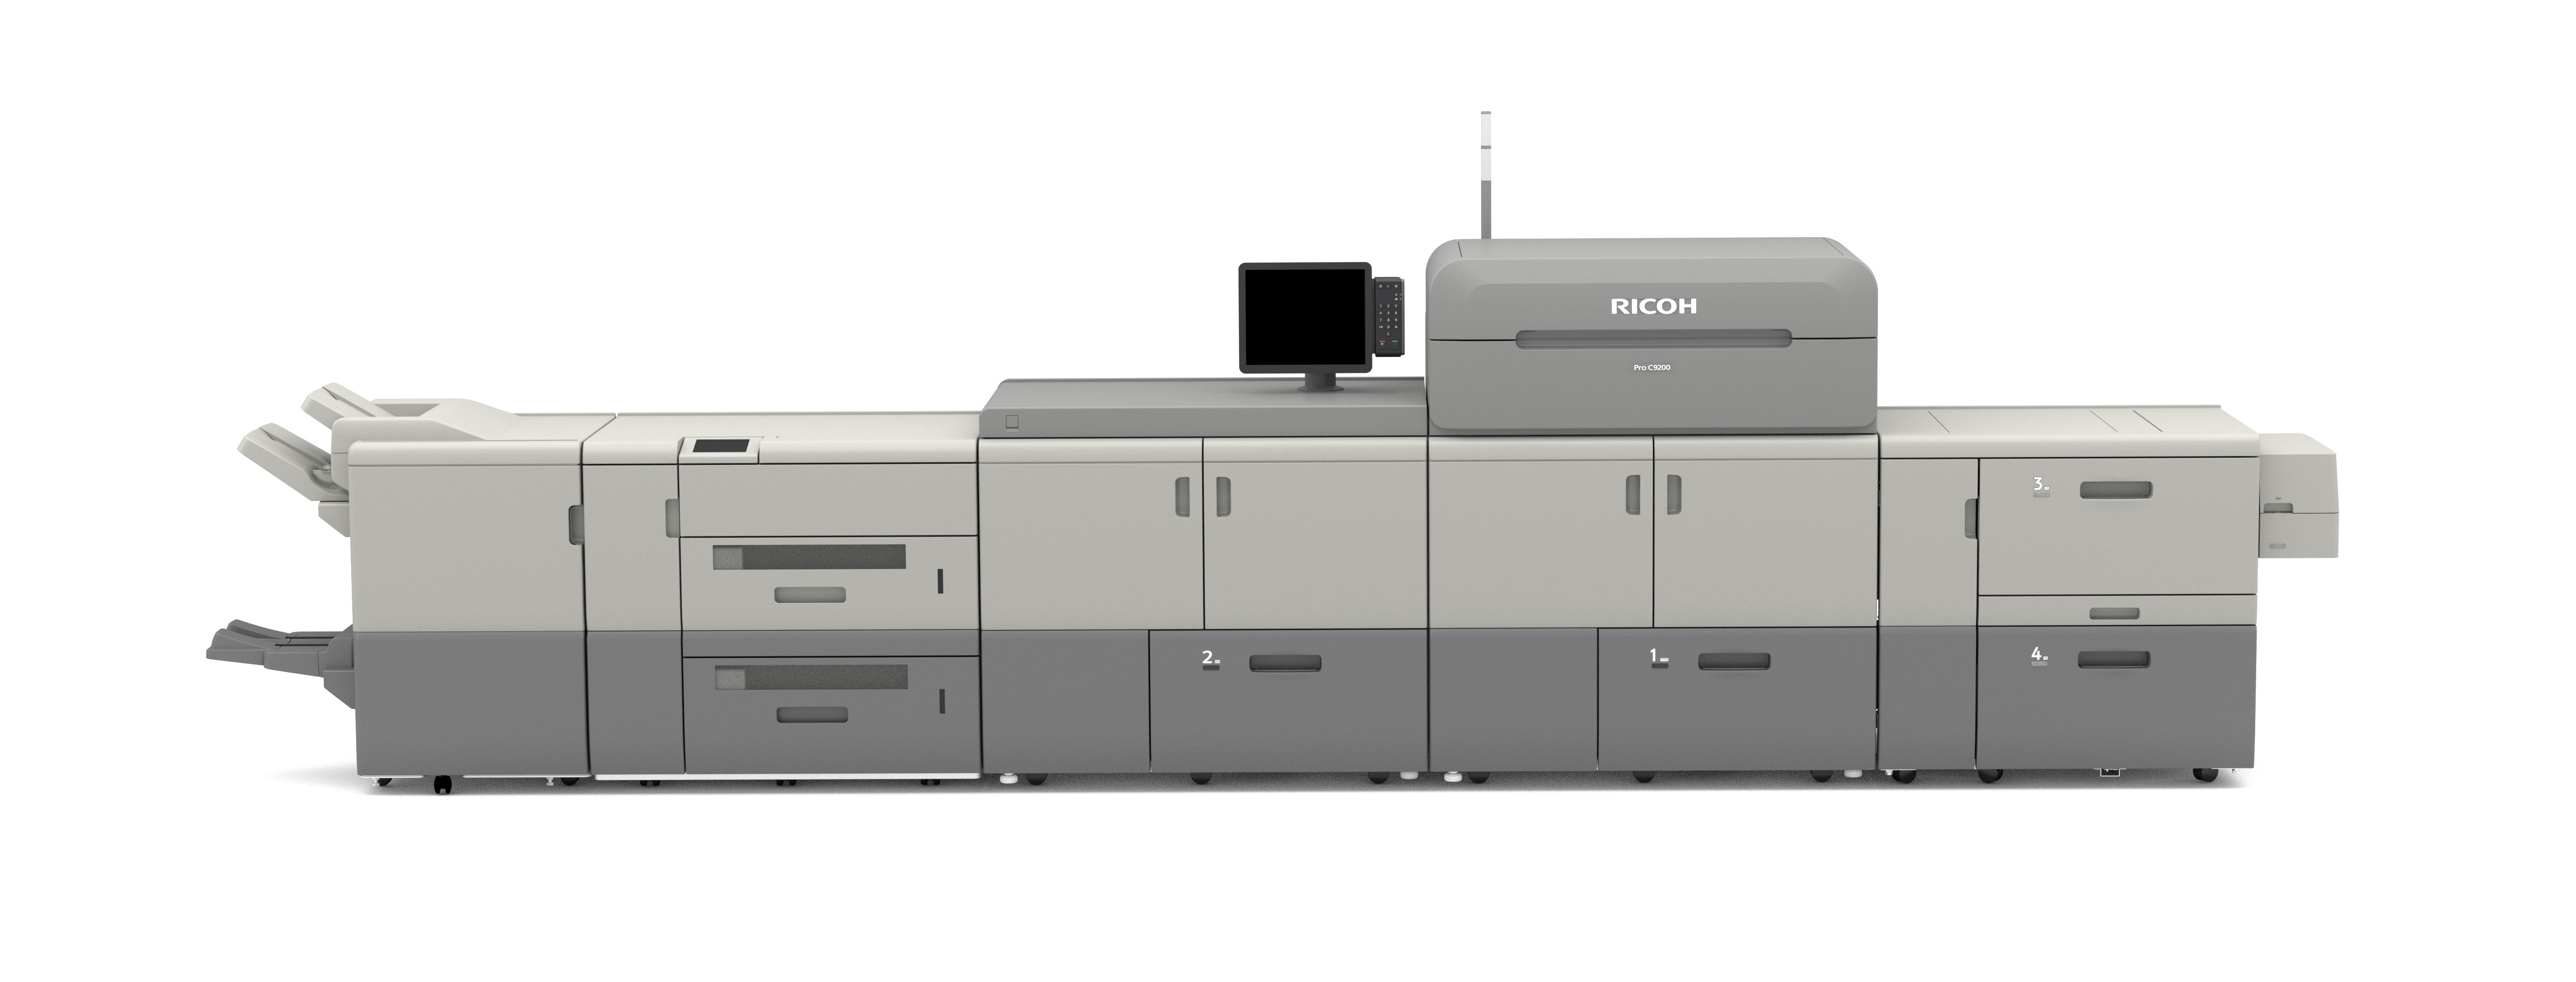 Ricoh s'associe à Celanese pour élargir la durabilité des supports imprimés pelliculés produits par des presses feuille, notamment la RICOH Pro™ C9200.